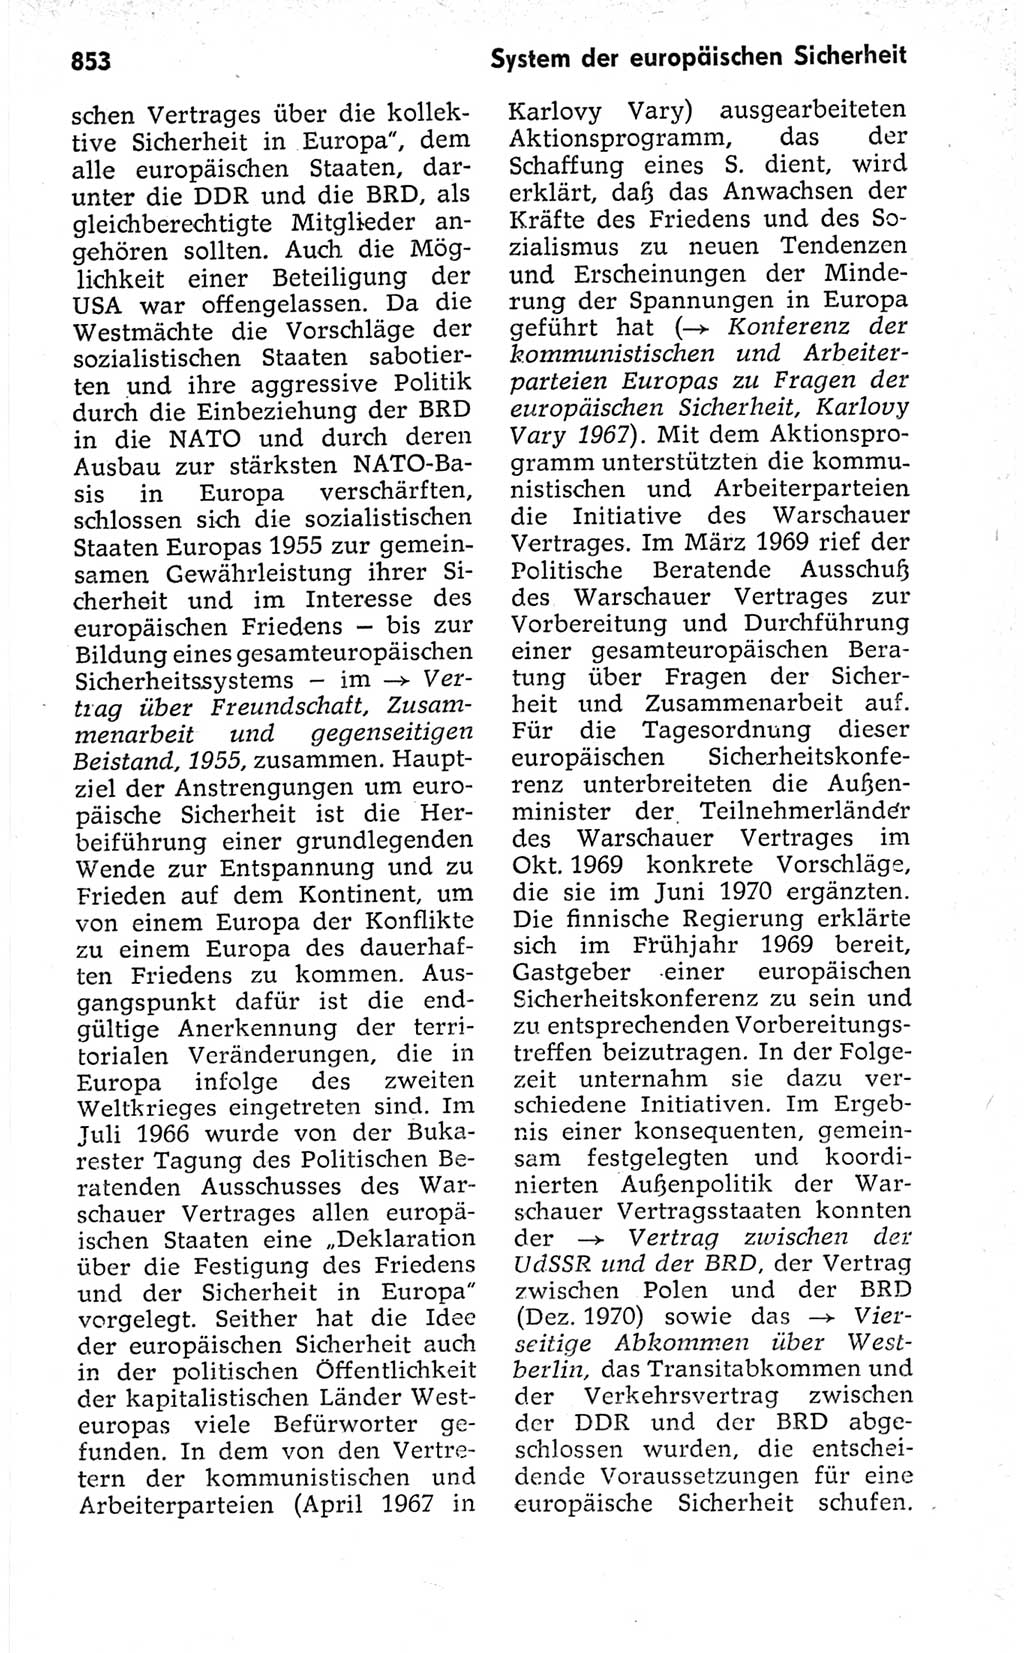 Kleines politisches Wörterbuch [Deutsche Demokratische Republik (DDR)] 1973, Seite 853 (Kl. pol. Wb. DDR 1973, S. 853)